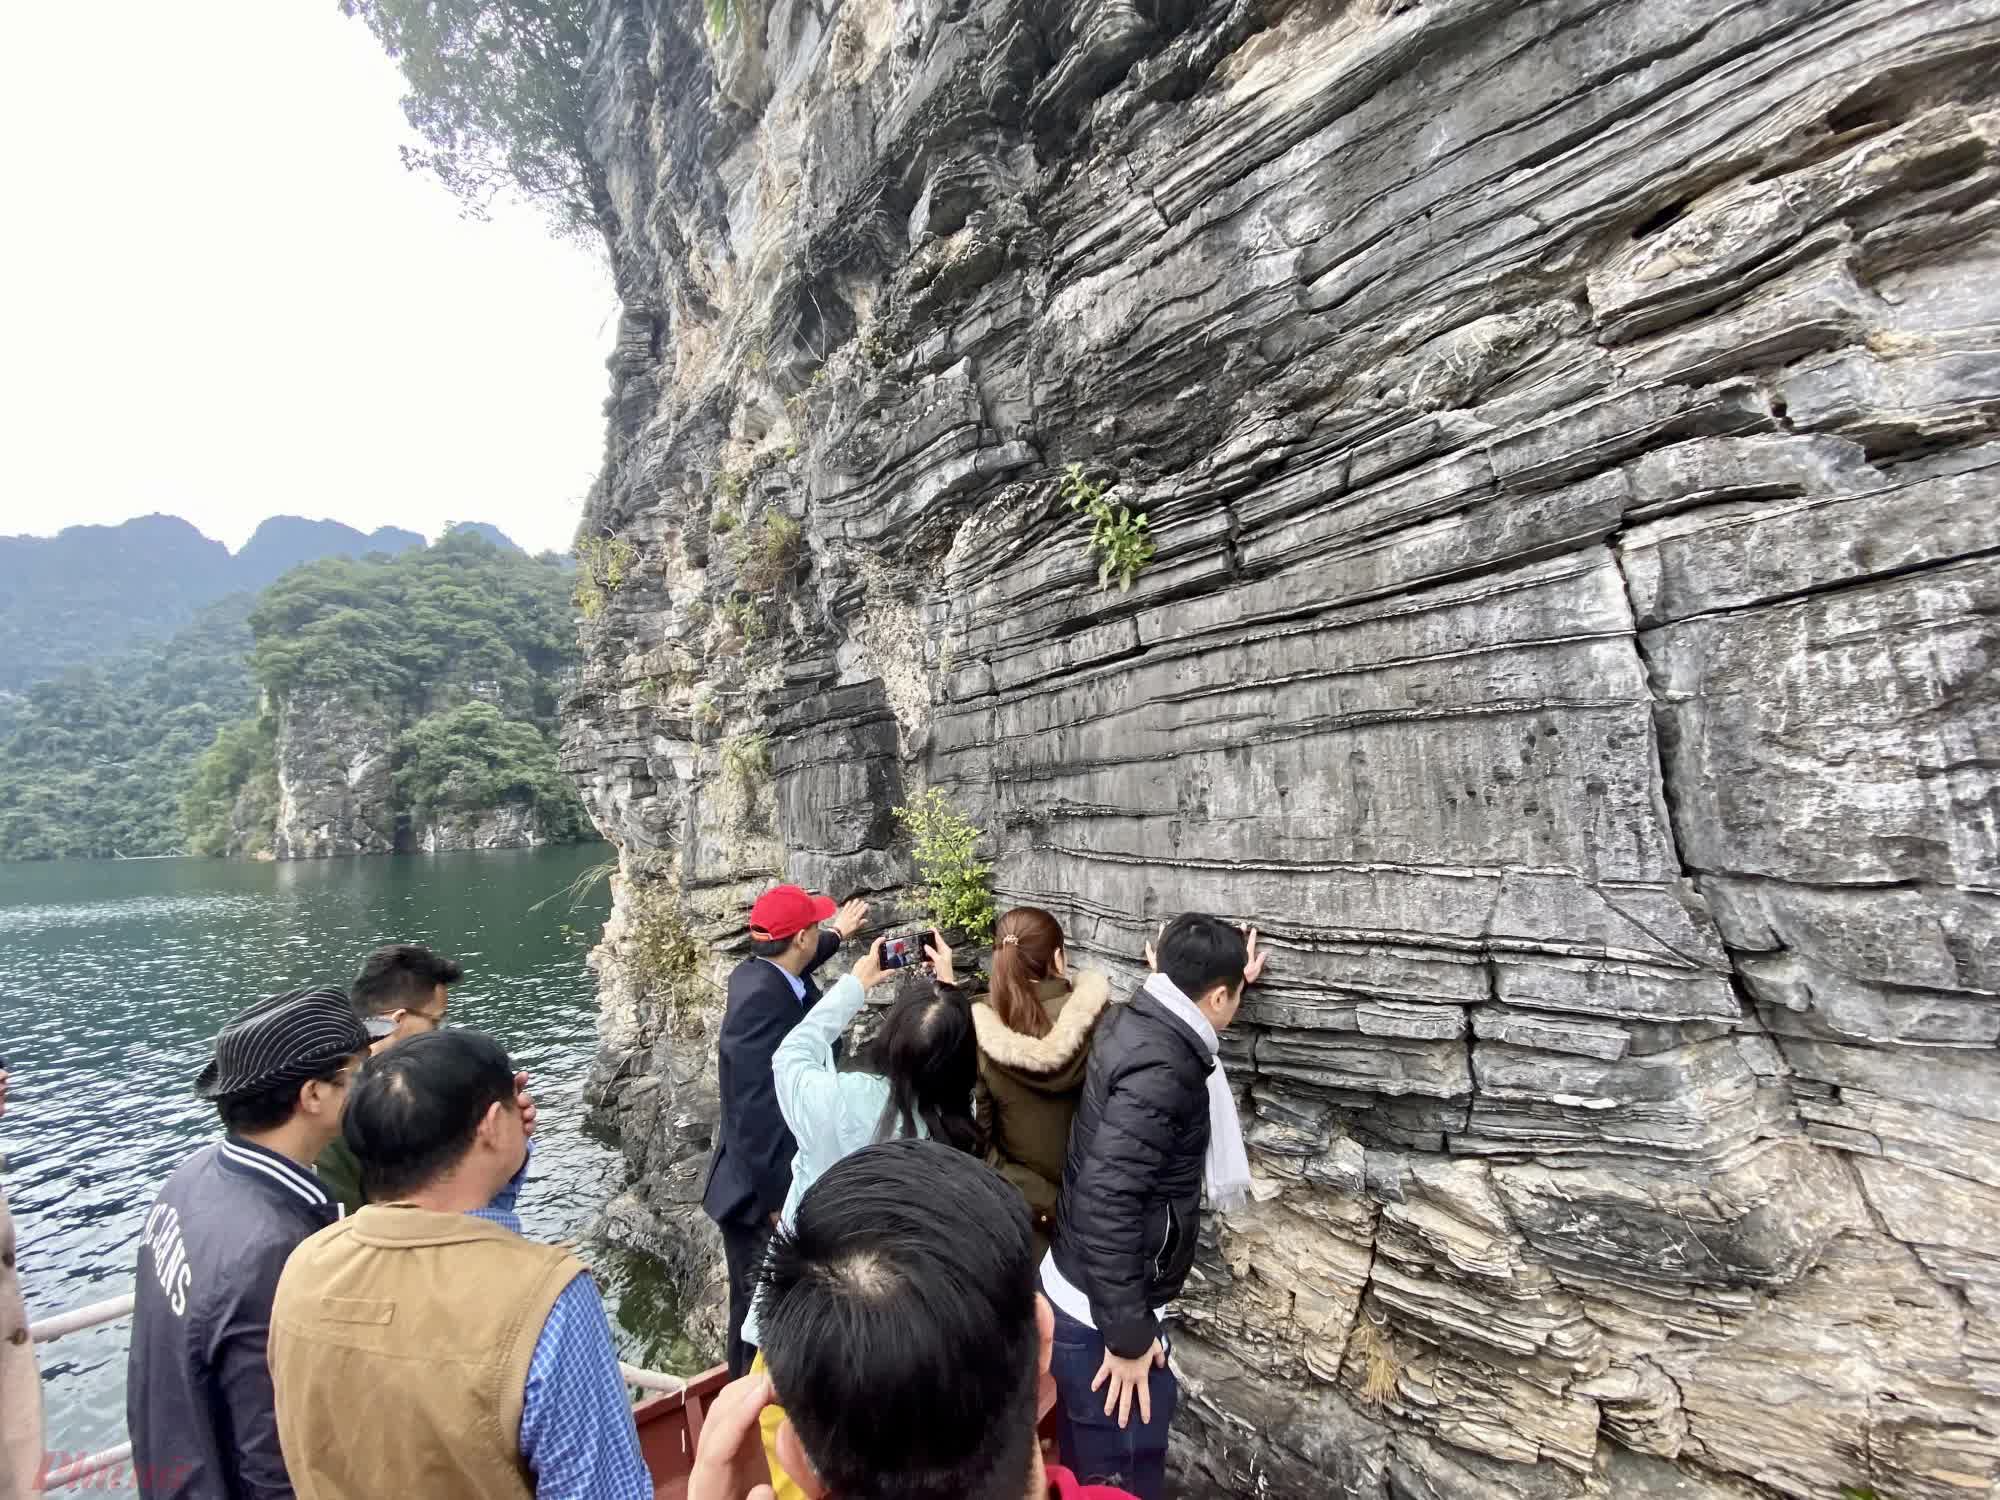 Phát hiện một Vịnh Hạ Long trên cạn ở vùng núi phía Bắc Việt Nam, du khách nhận xét có khung cảnh sơn thủy hữu tình - Ảnh 4.